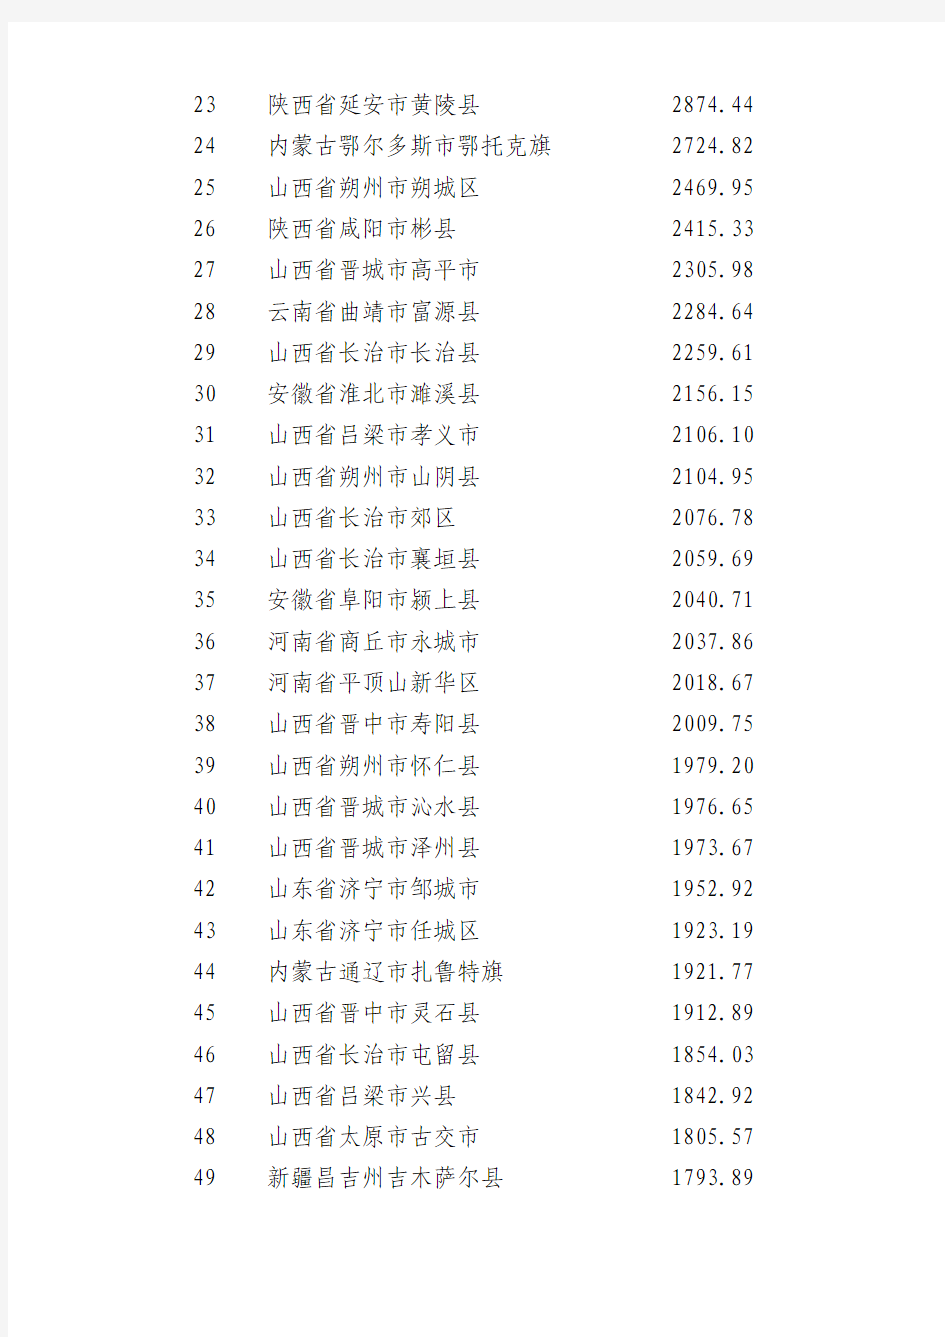 2012年全国原煤产量100强(县、市)